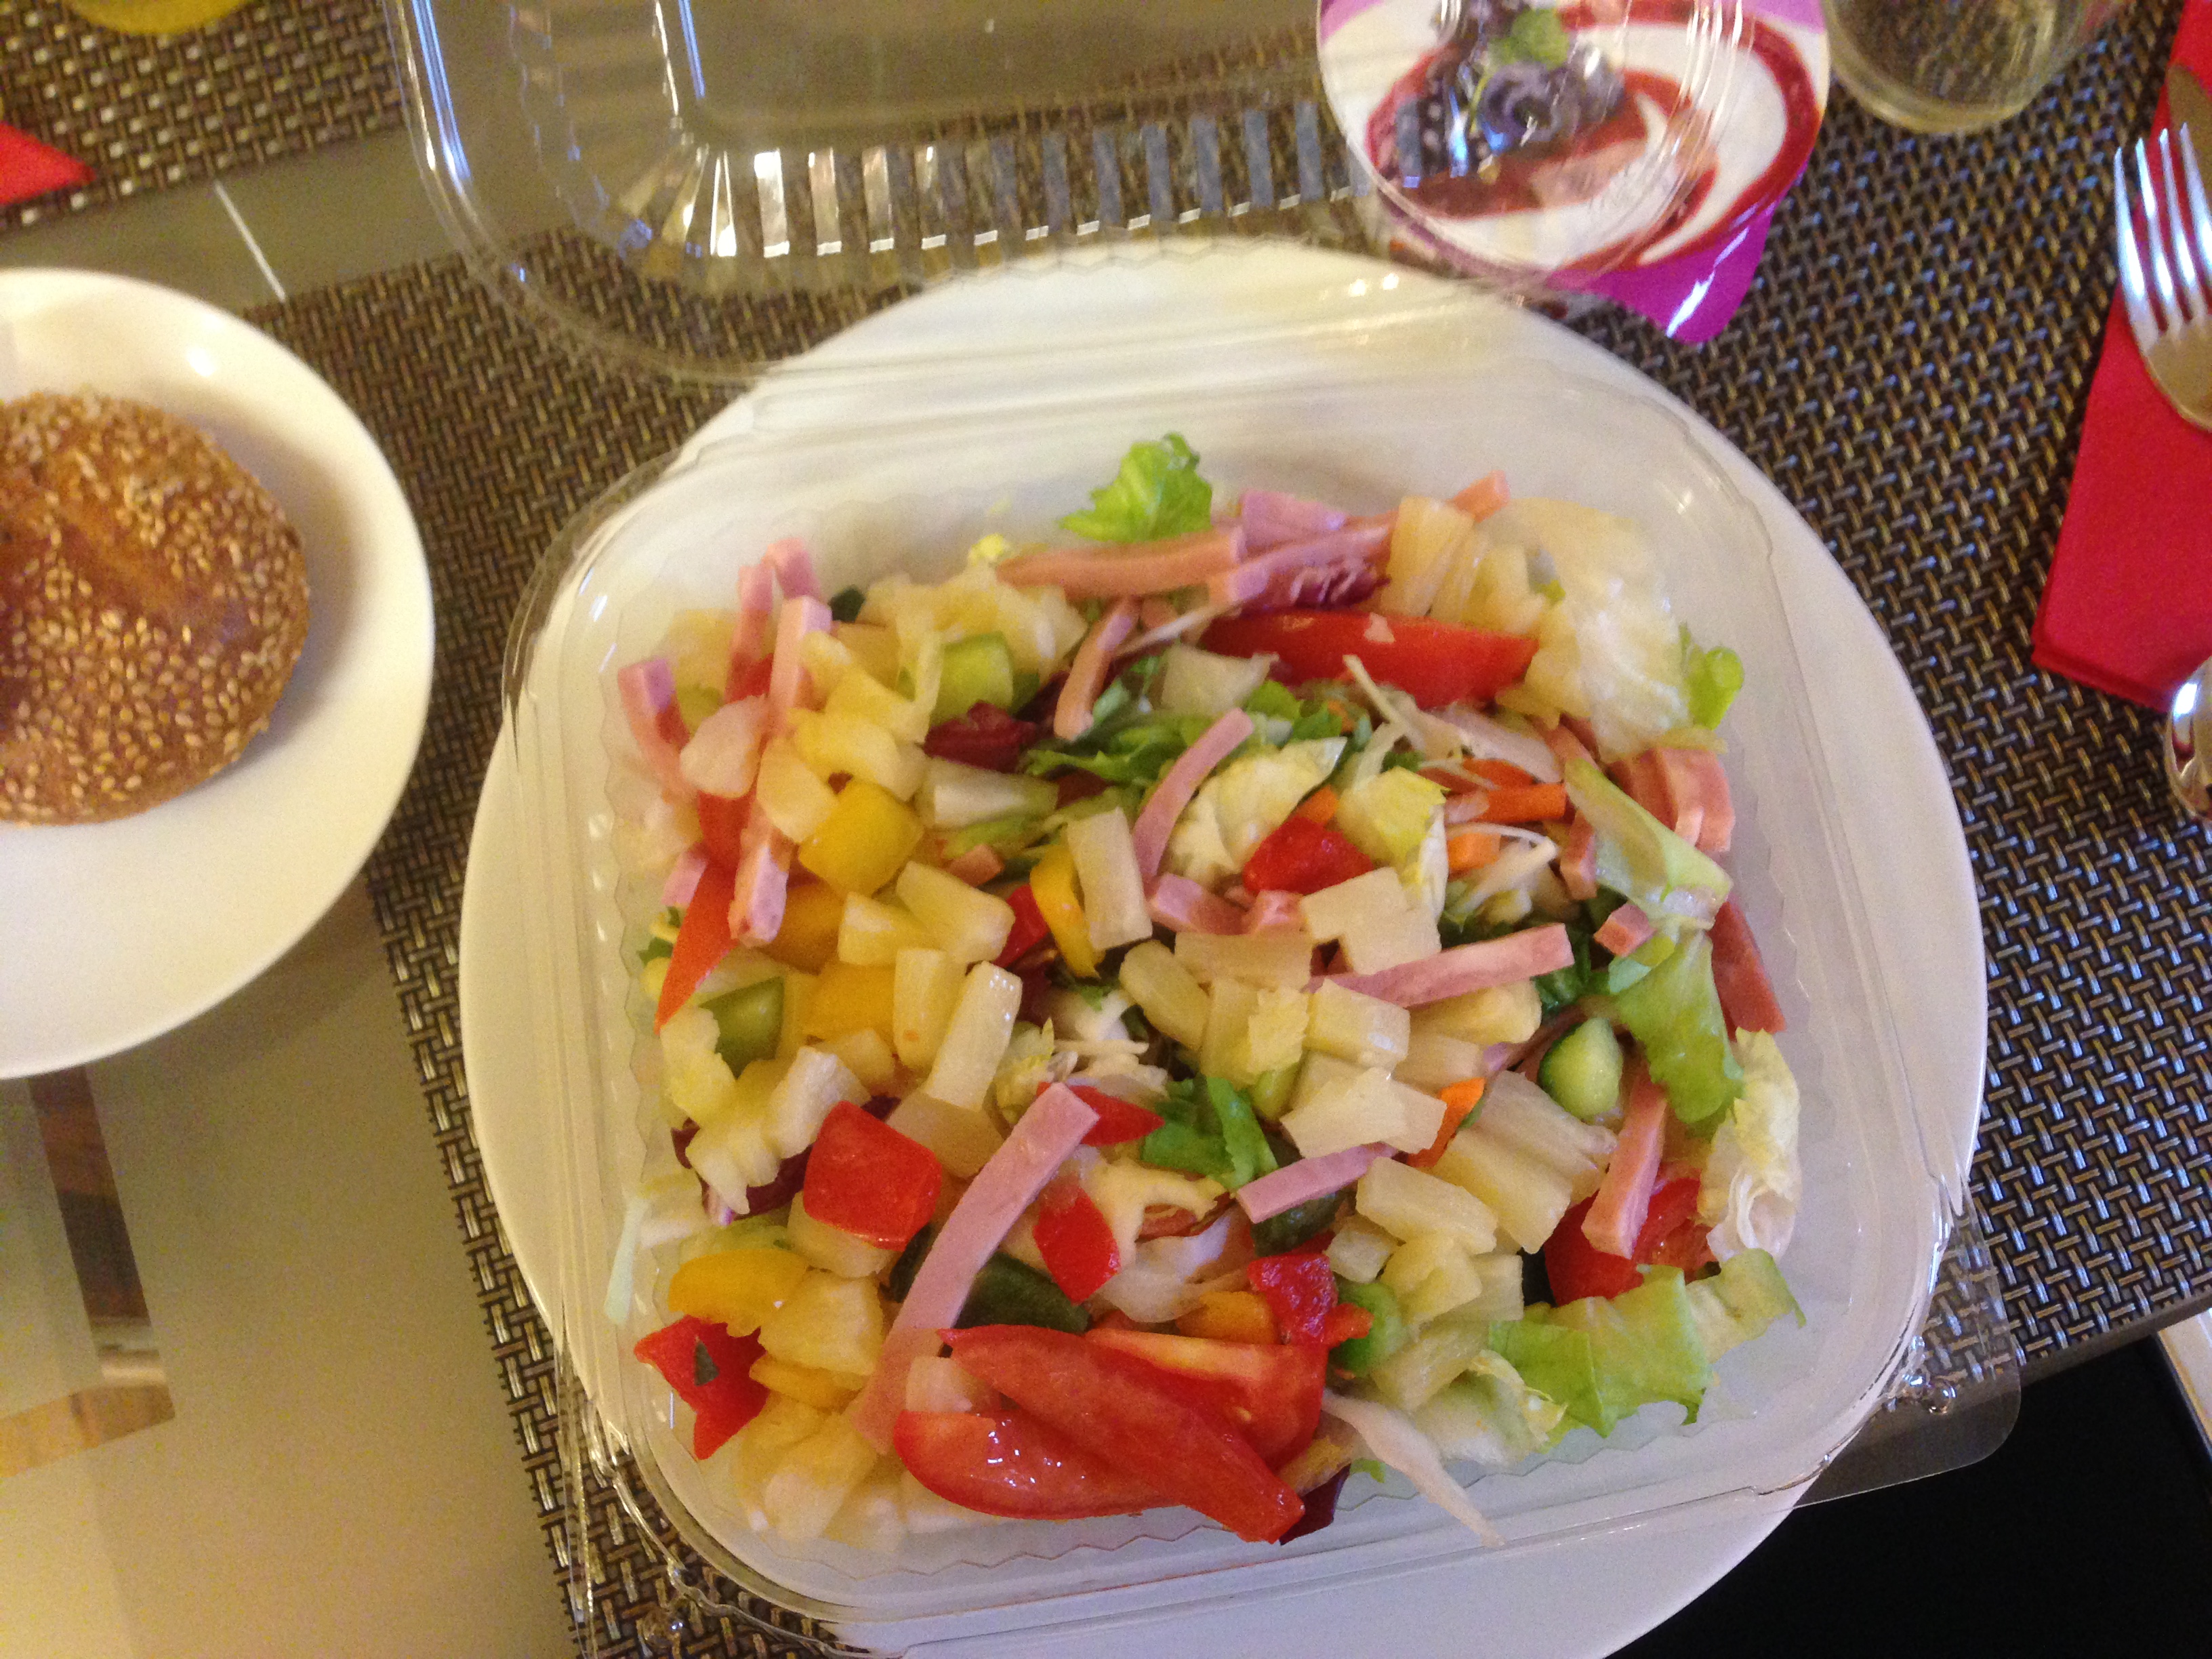 Salat mit dicke Schinkenstreifen, Ananas und vieles mehr.